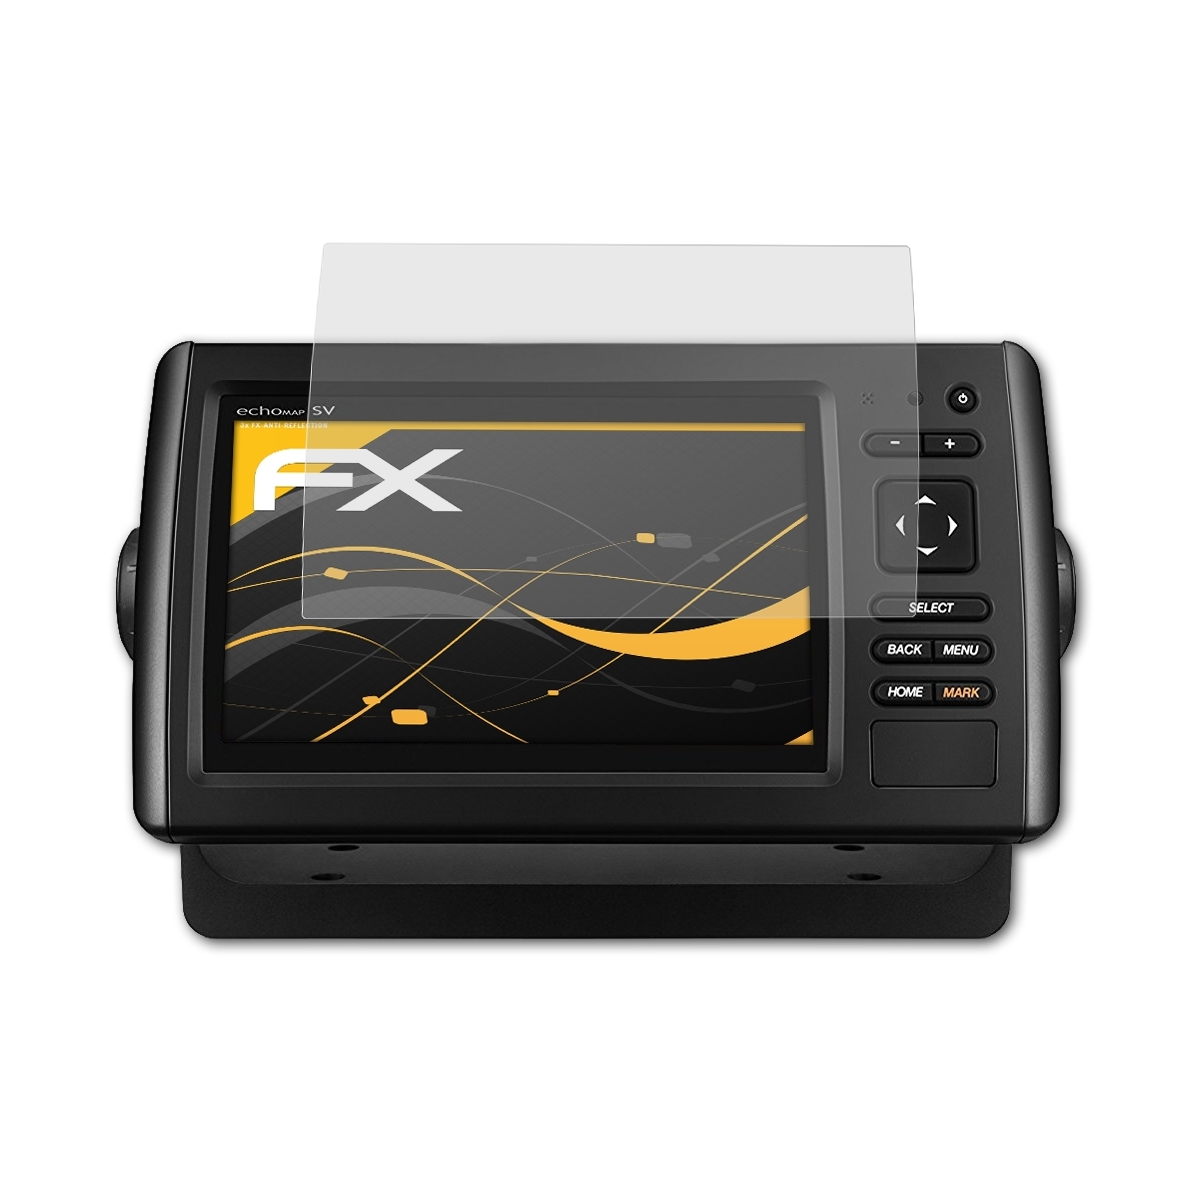 72sv) FX-Antireflex 3x Garmin ATFOLIX CHIRP Displayschutz(für echoMAP